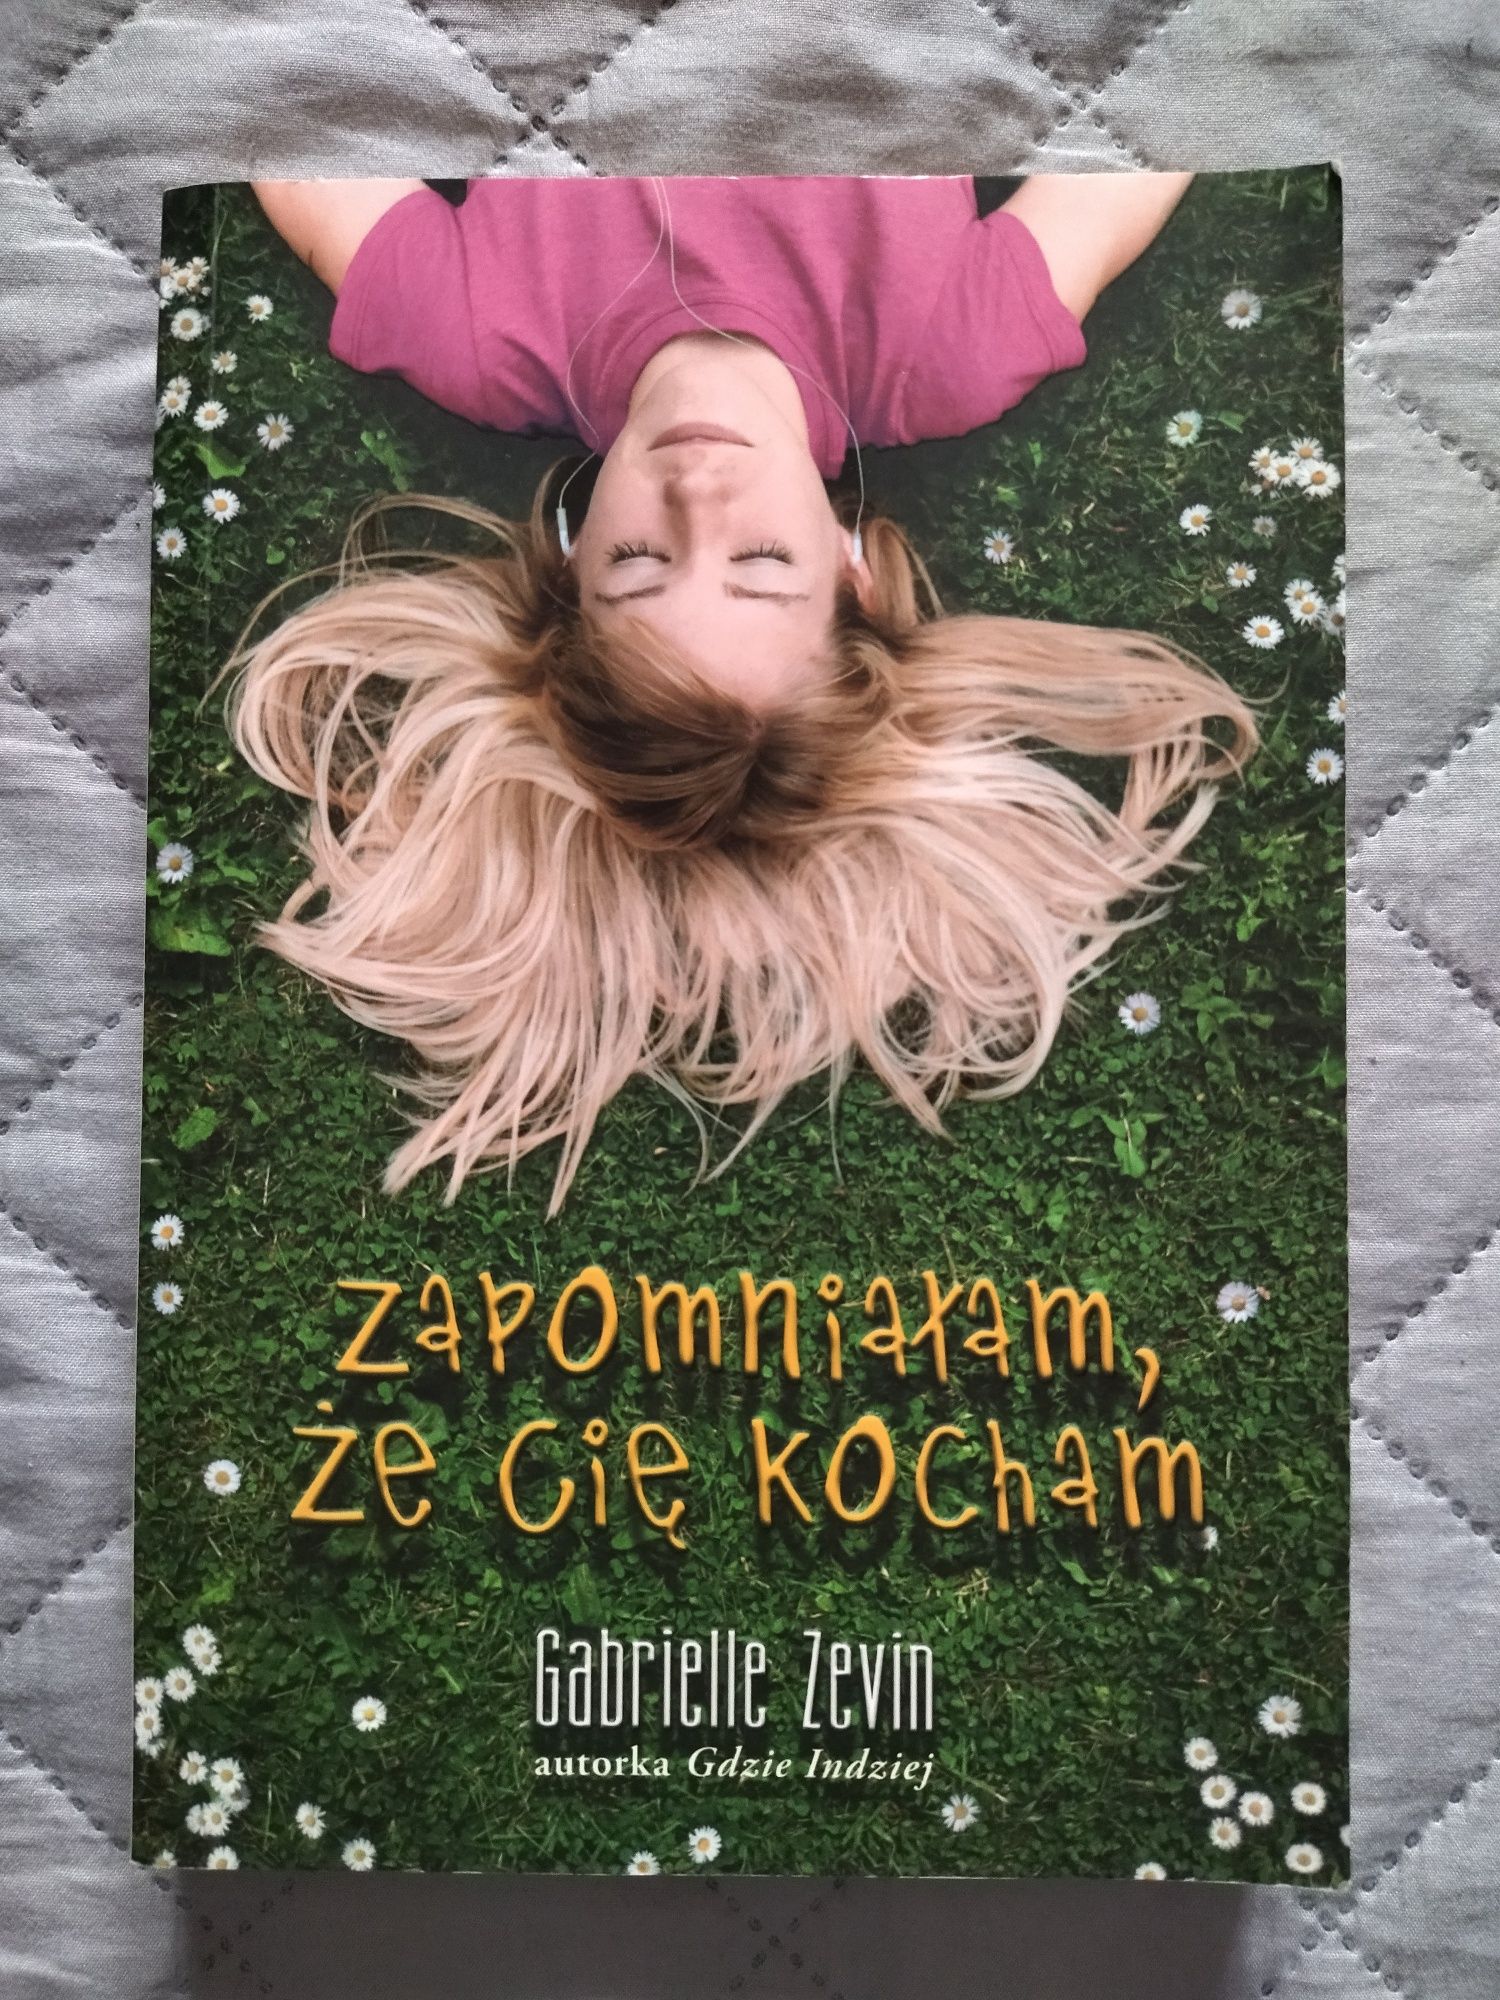 Książka "Zapomniałam, że cię kocham" Gabrielle Zevin